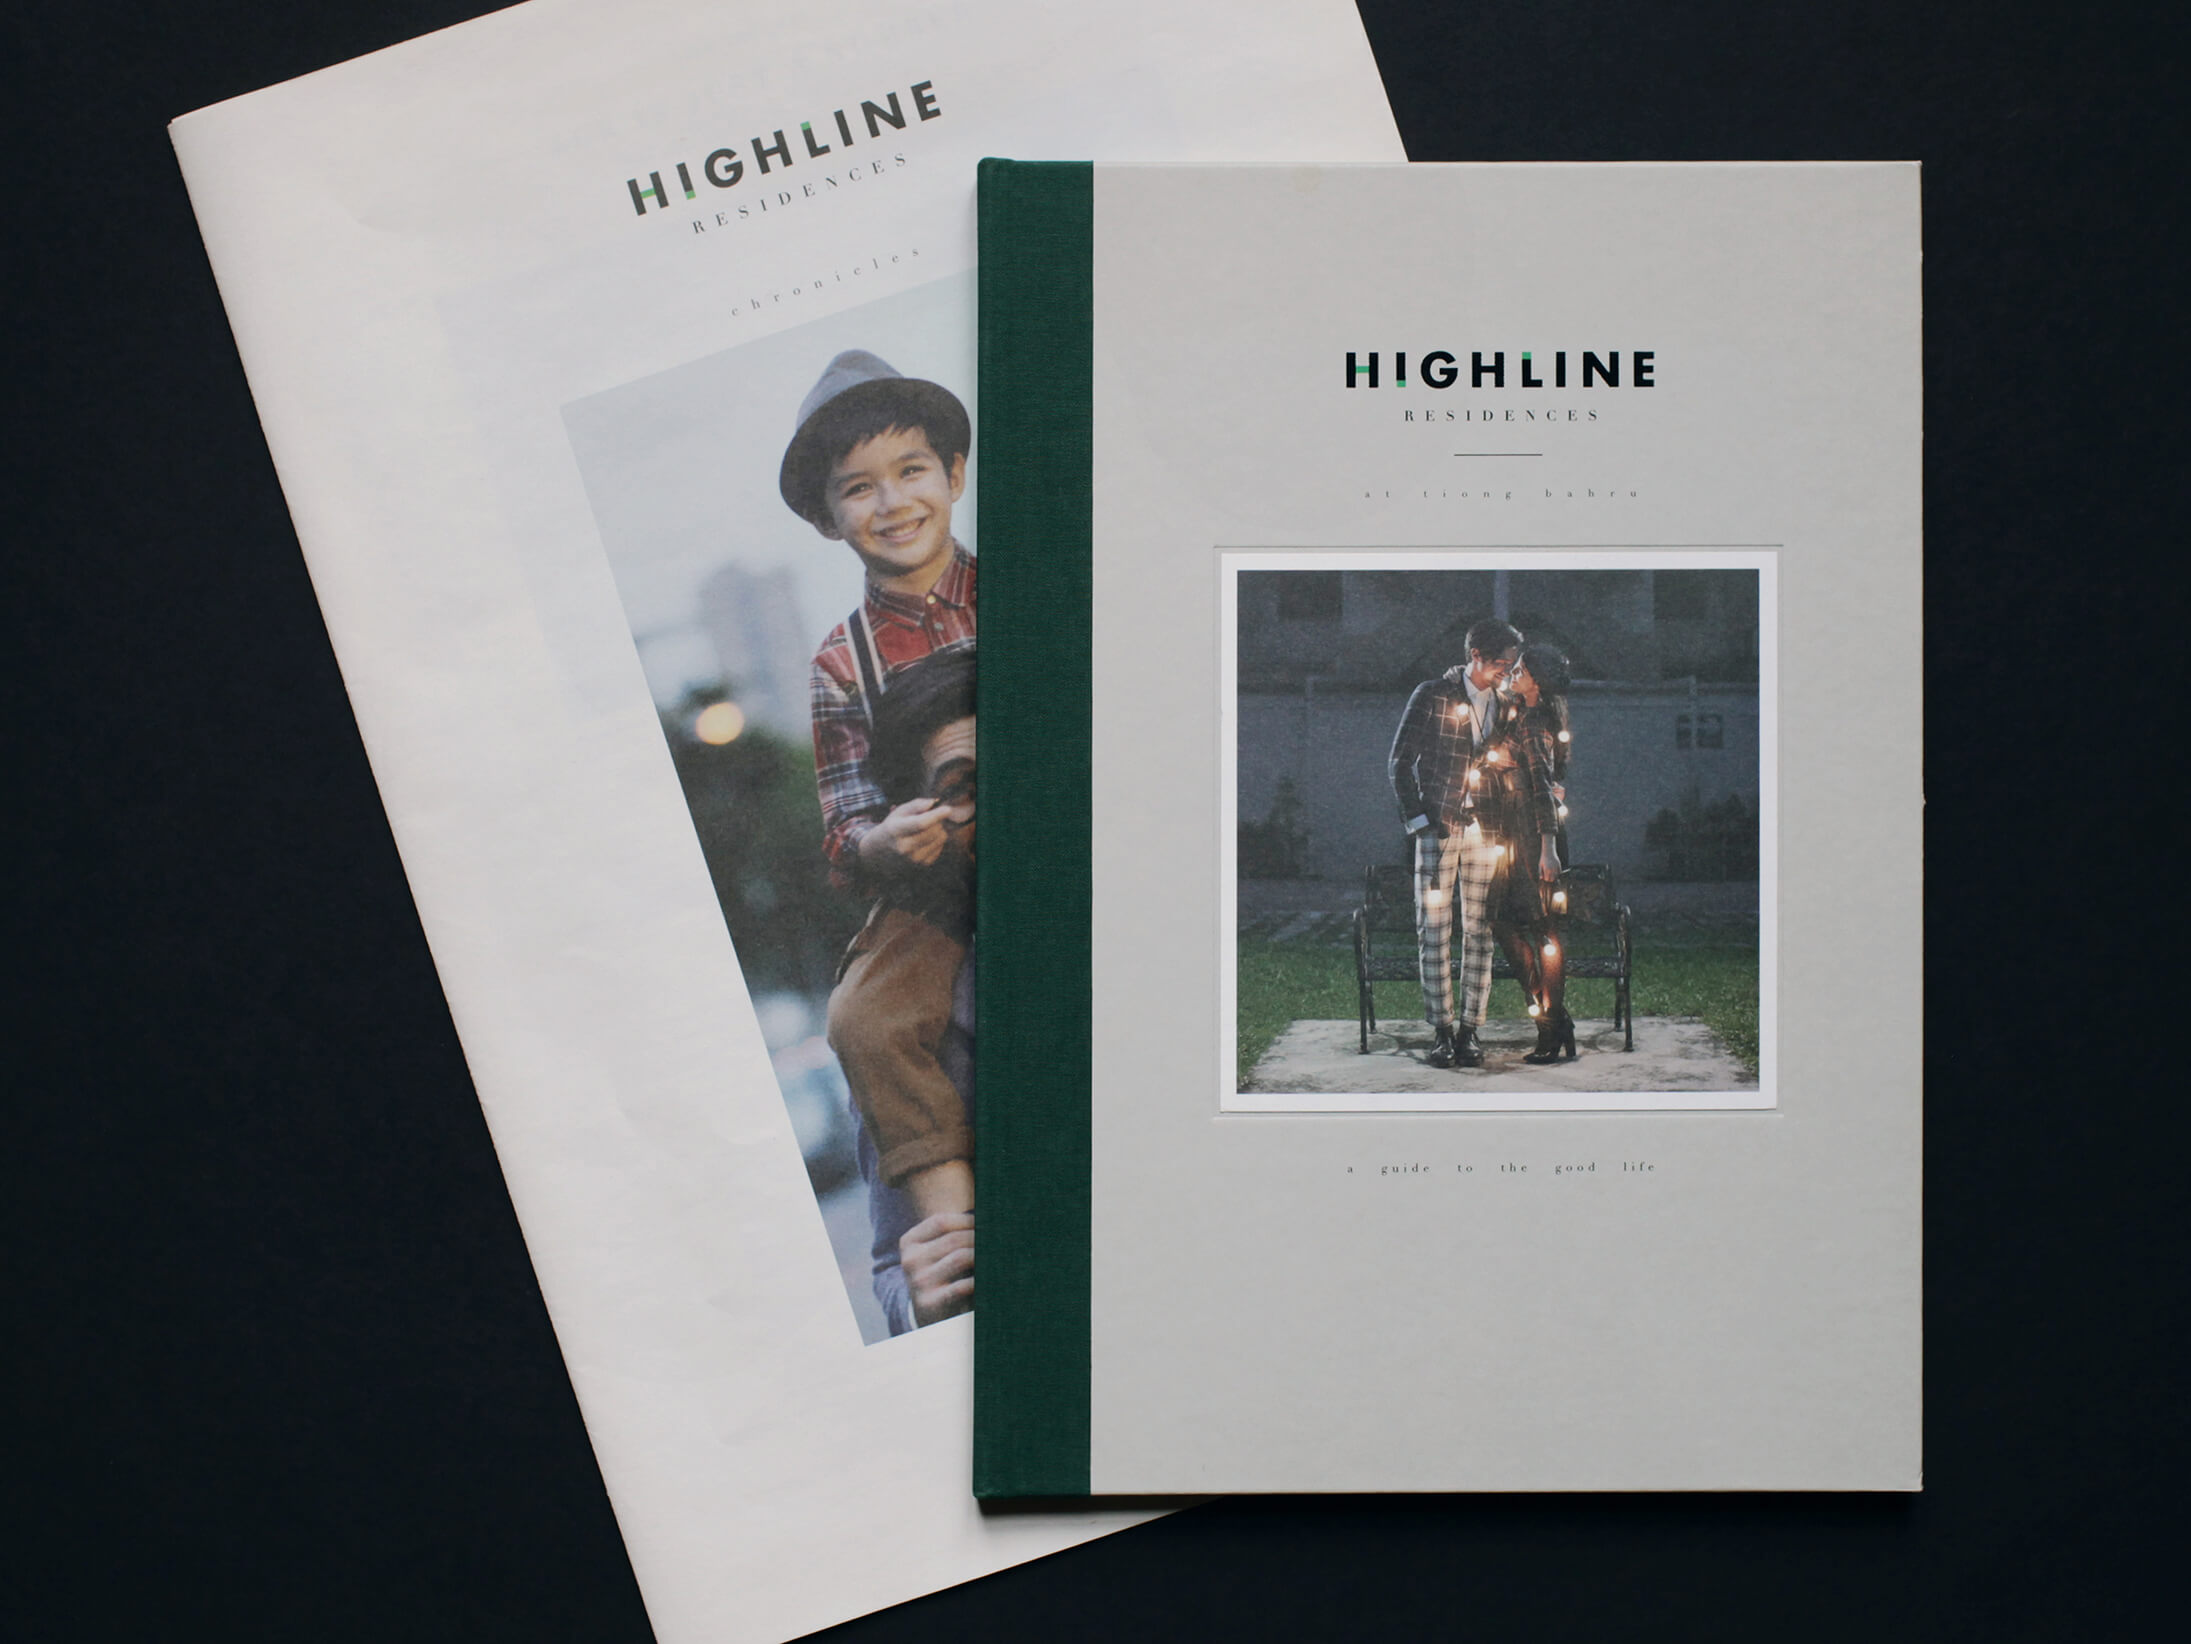 Kinetic_Highline_Residences_brochure_1